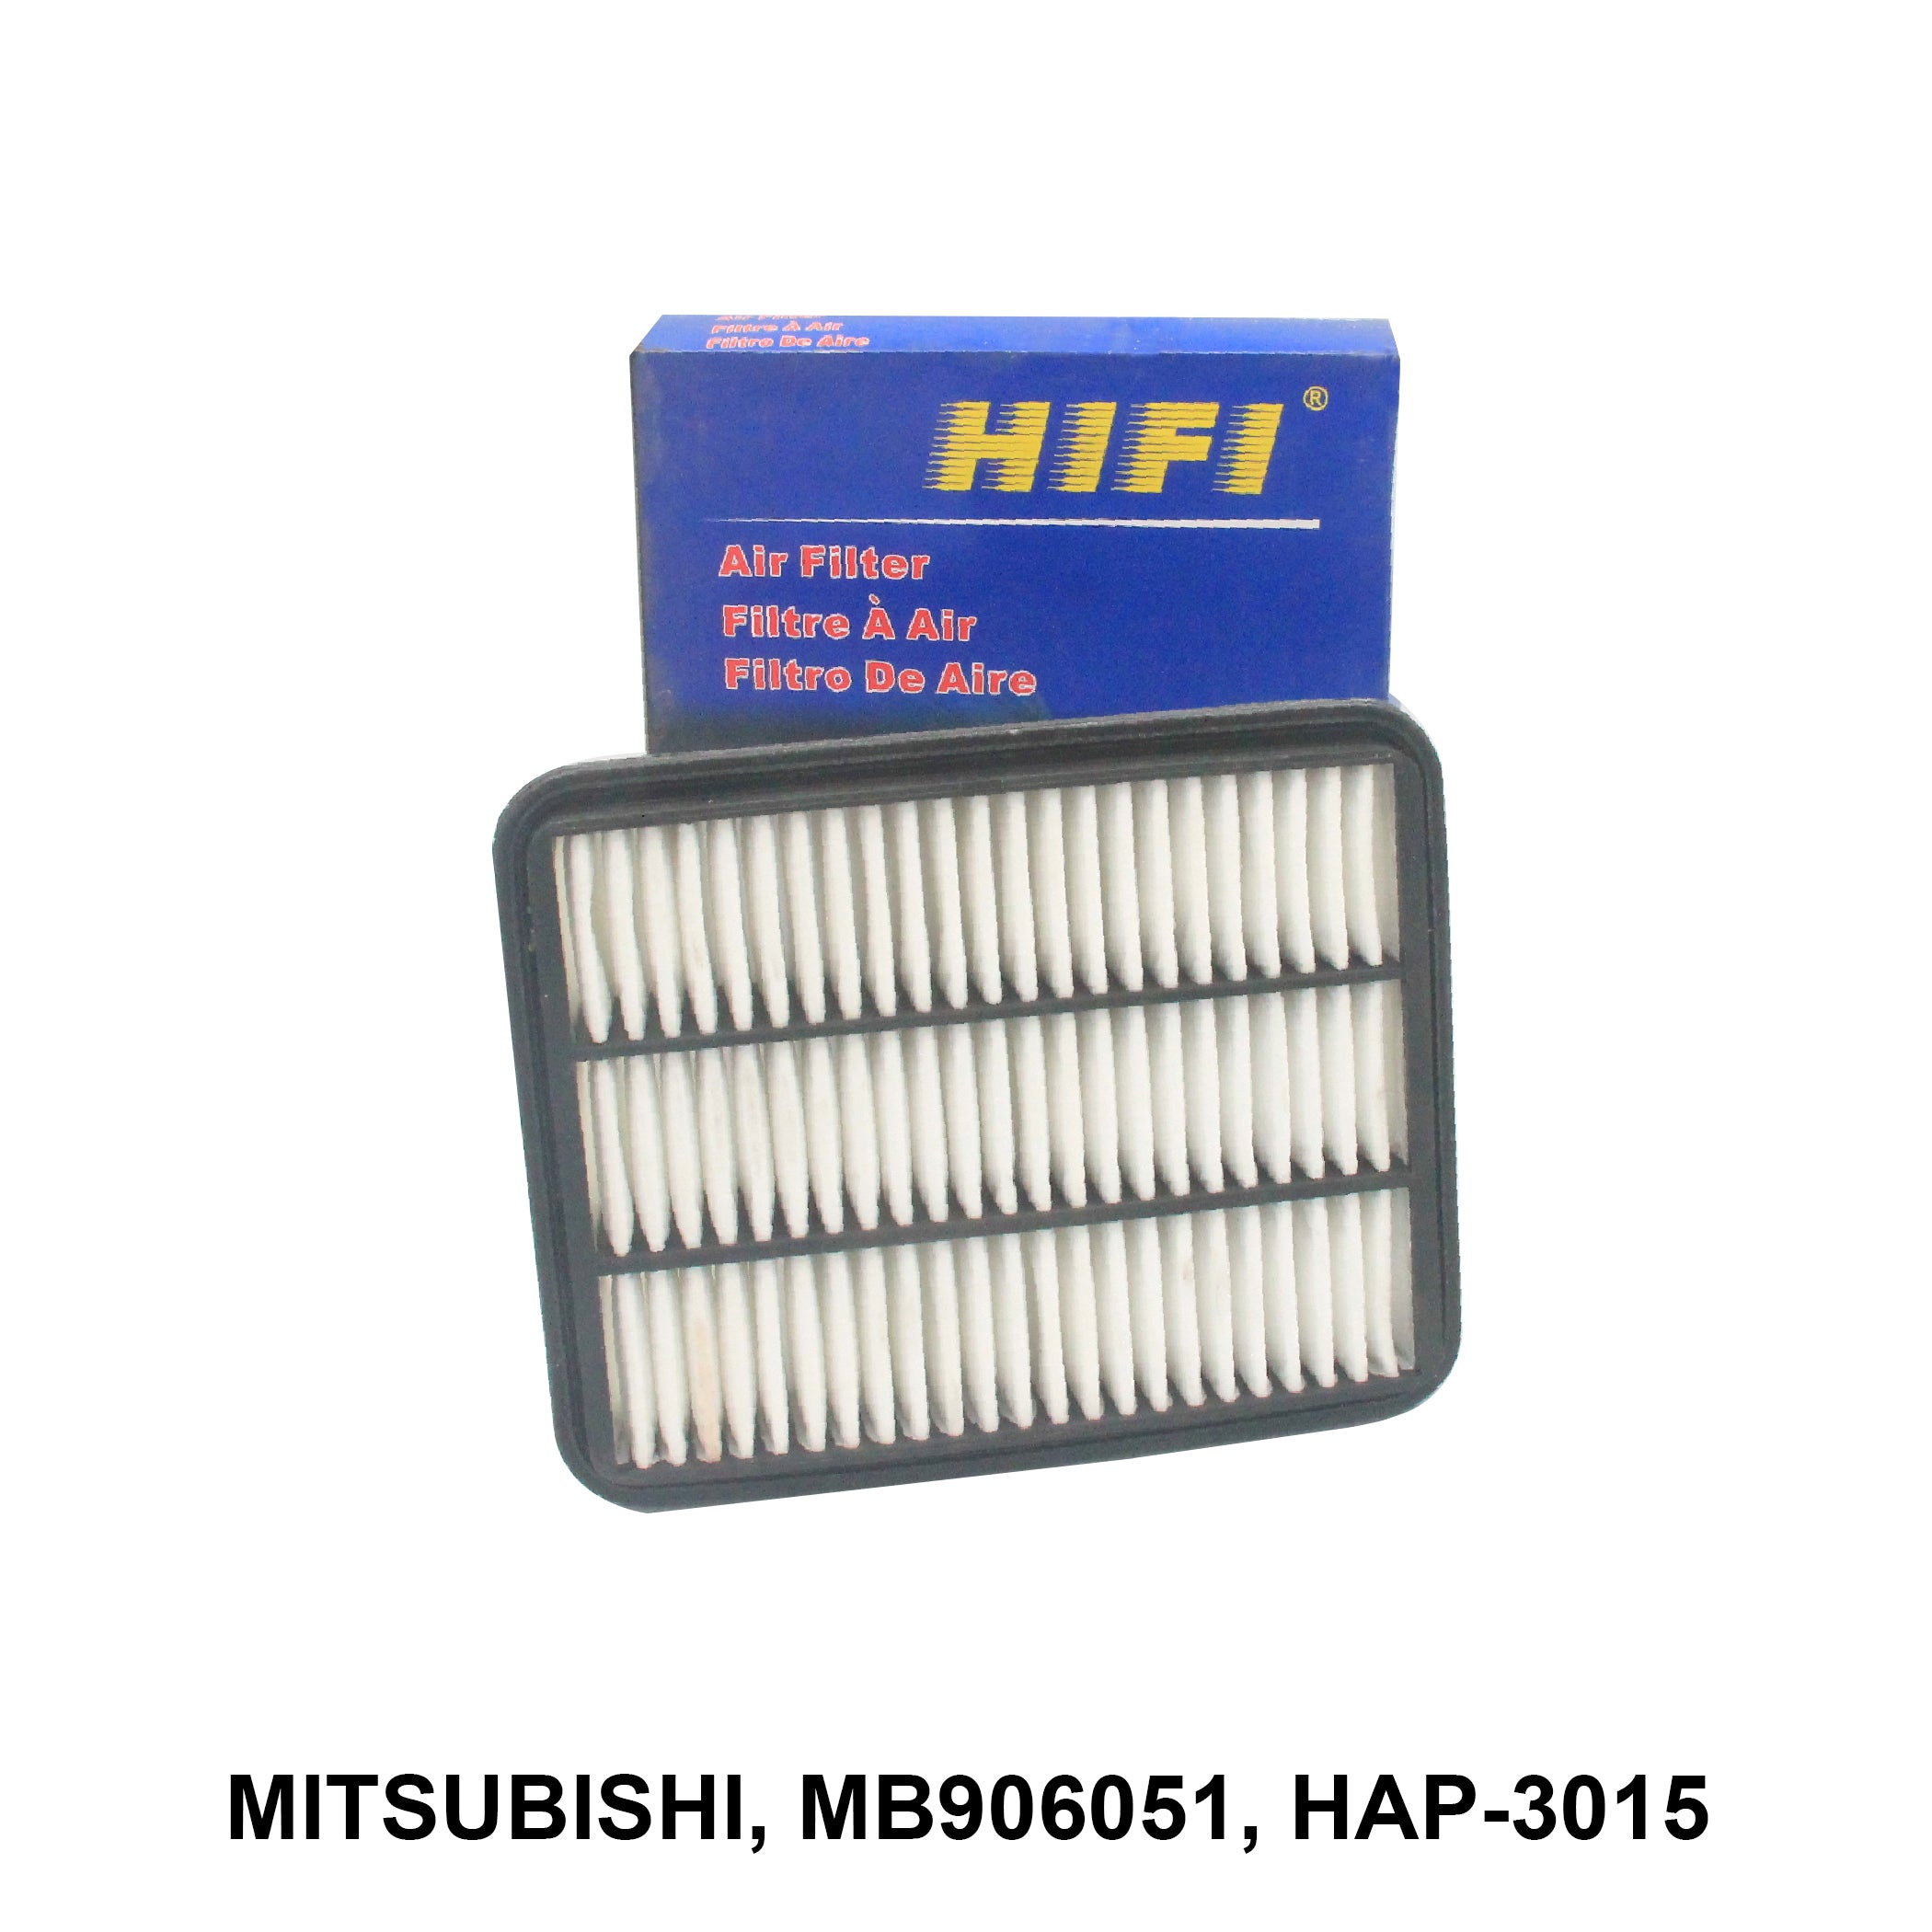 Air Filter၊ HIFI၊ MB906051၊ HAP-3015 (000154)